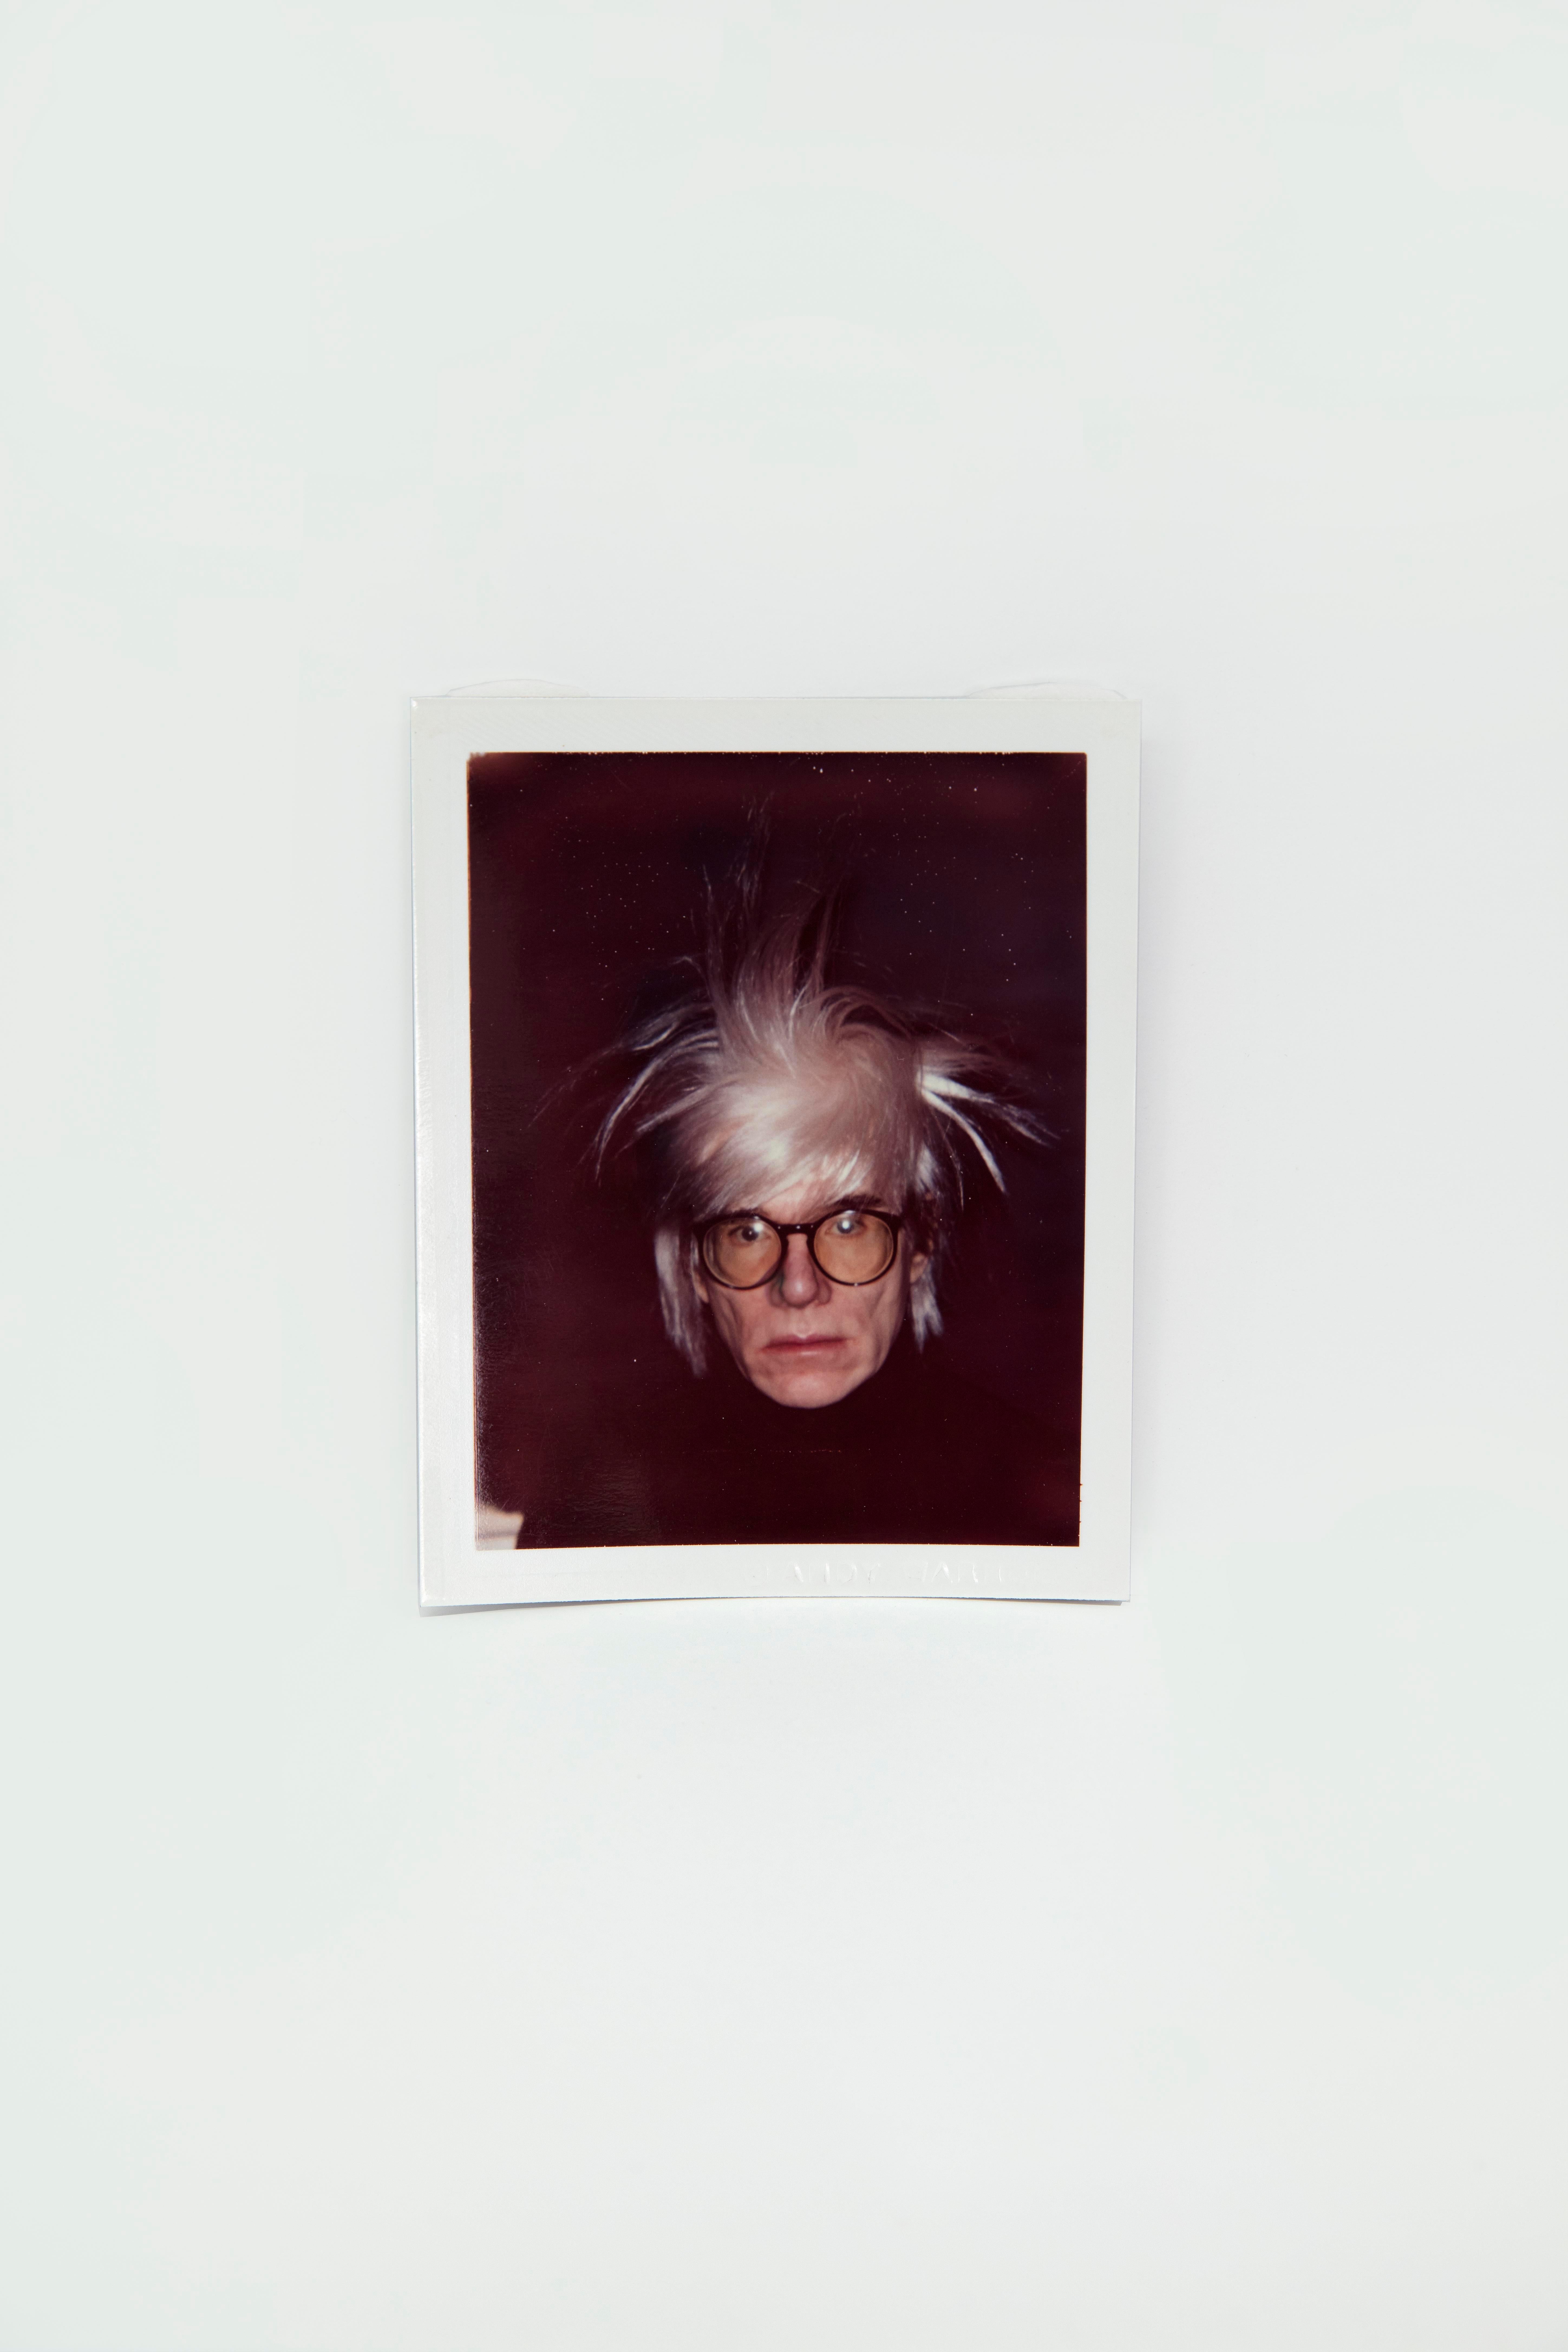 Abmessungen des Bildes: 4,25 x 3,375 Zoll.
Gerahmte Abmessungen: 12,125 x 12,125 Zoll.
Rückseitig zweimal gestempelt von The Estate of Andy Warhol und The Andy Warhol Foundation for the Visual Arts. Die Inventarnummer der Andy Warhol Foundation for